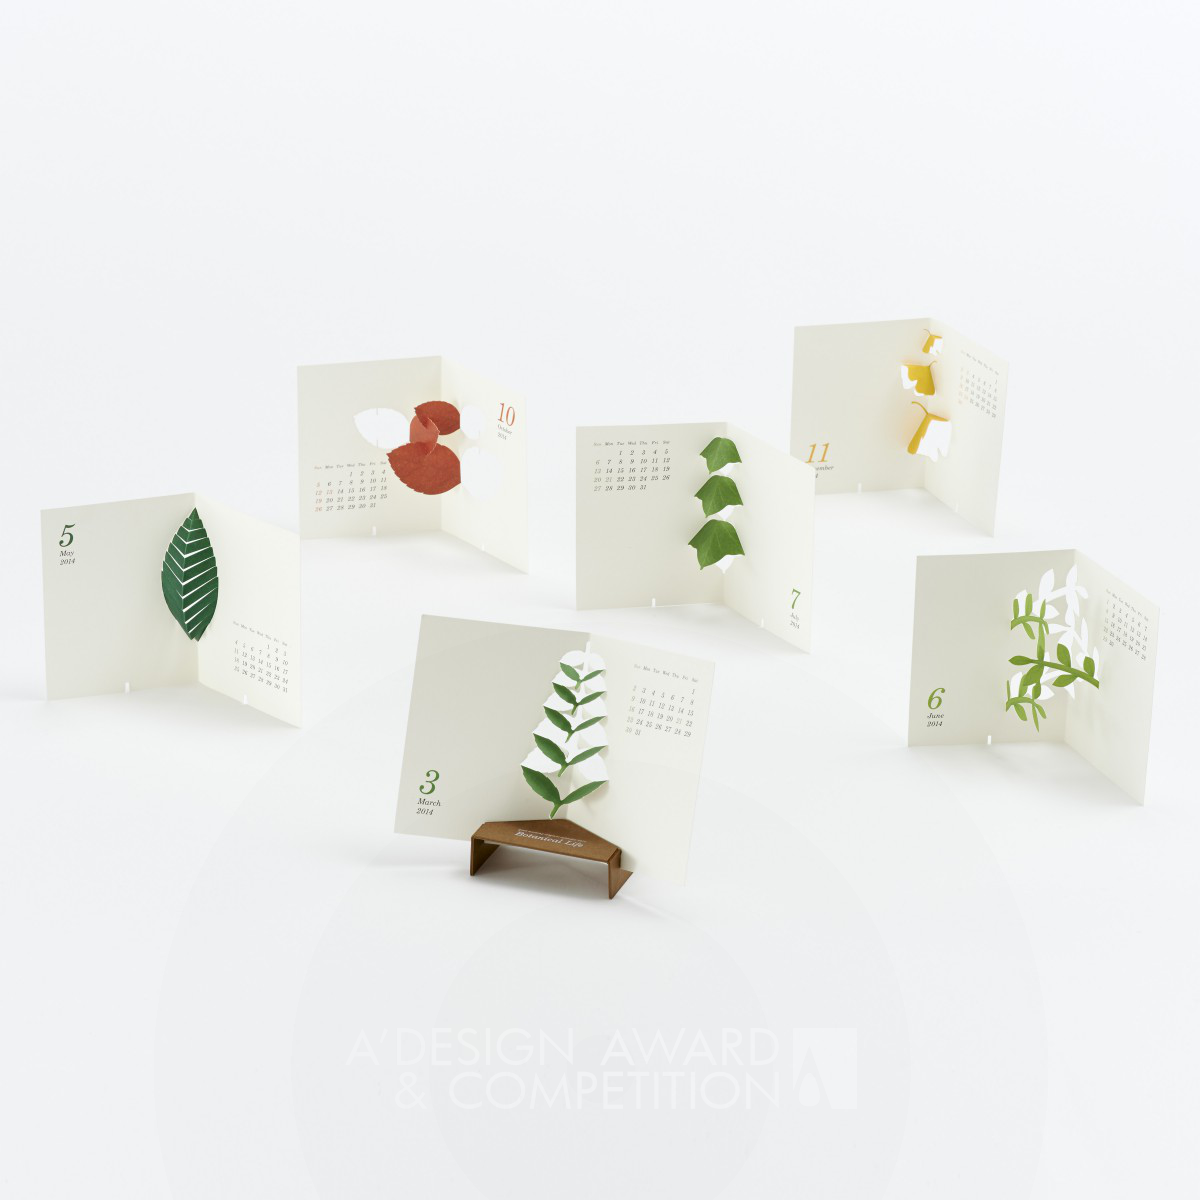 Calendar 2014 “Botanical Life” Calendar by Katsumi Tamura